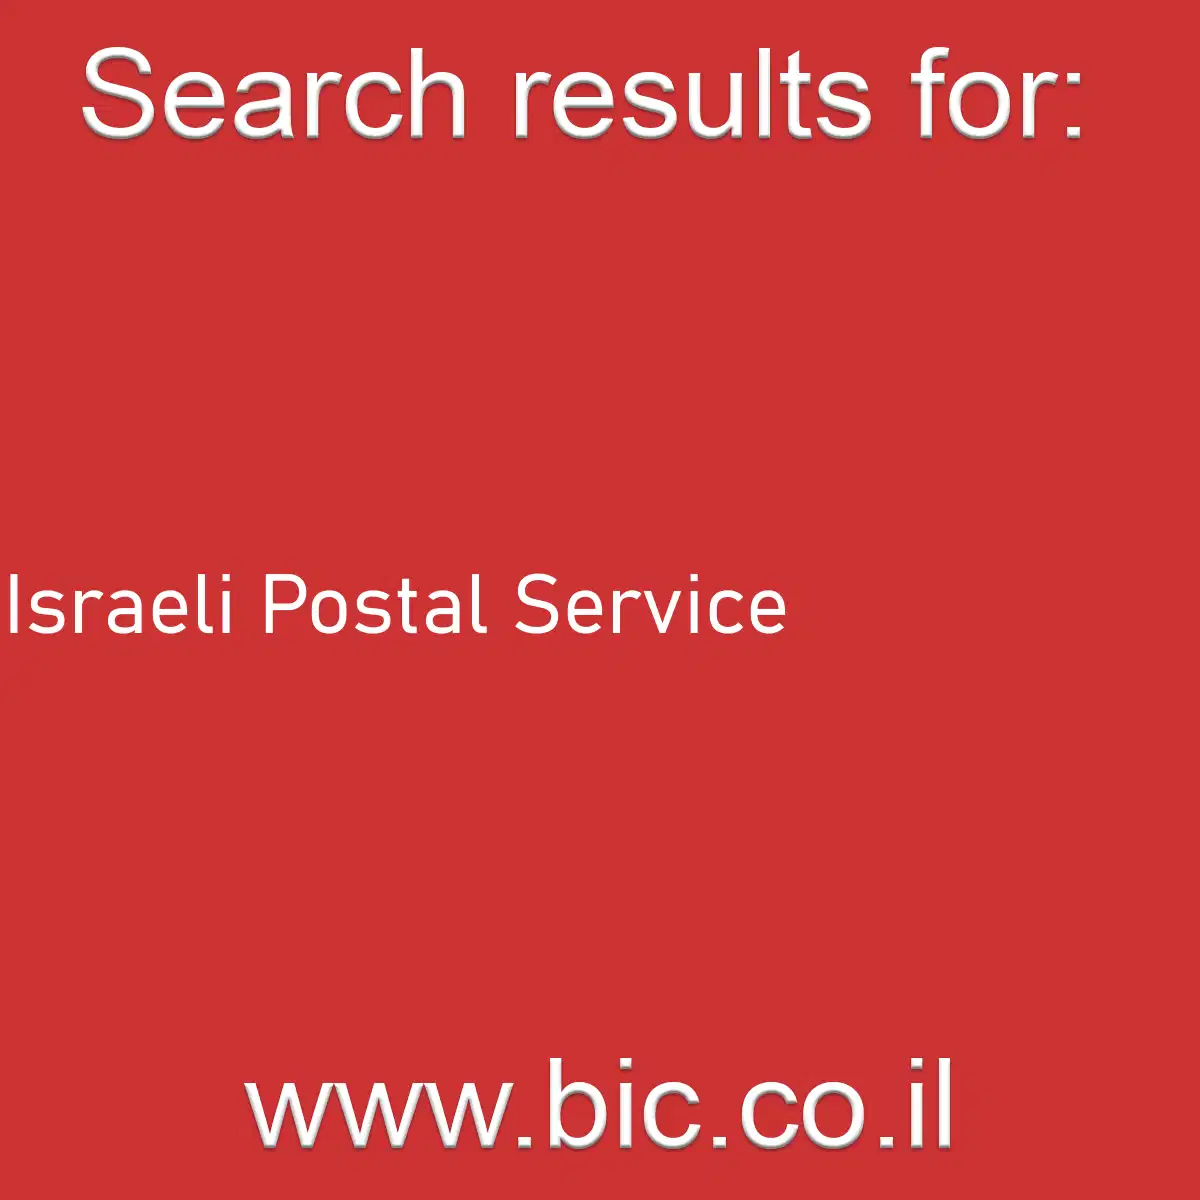 Israeli Postal Service